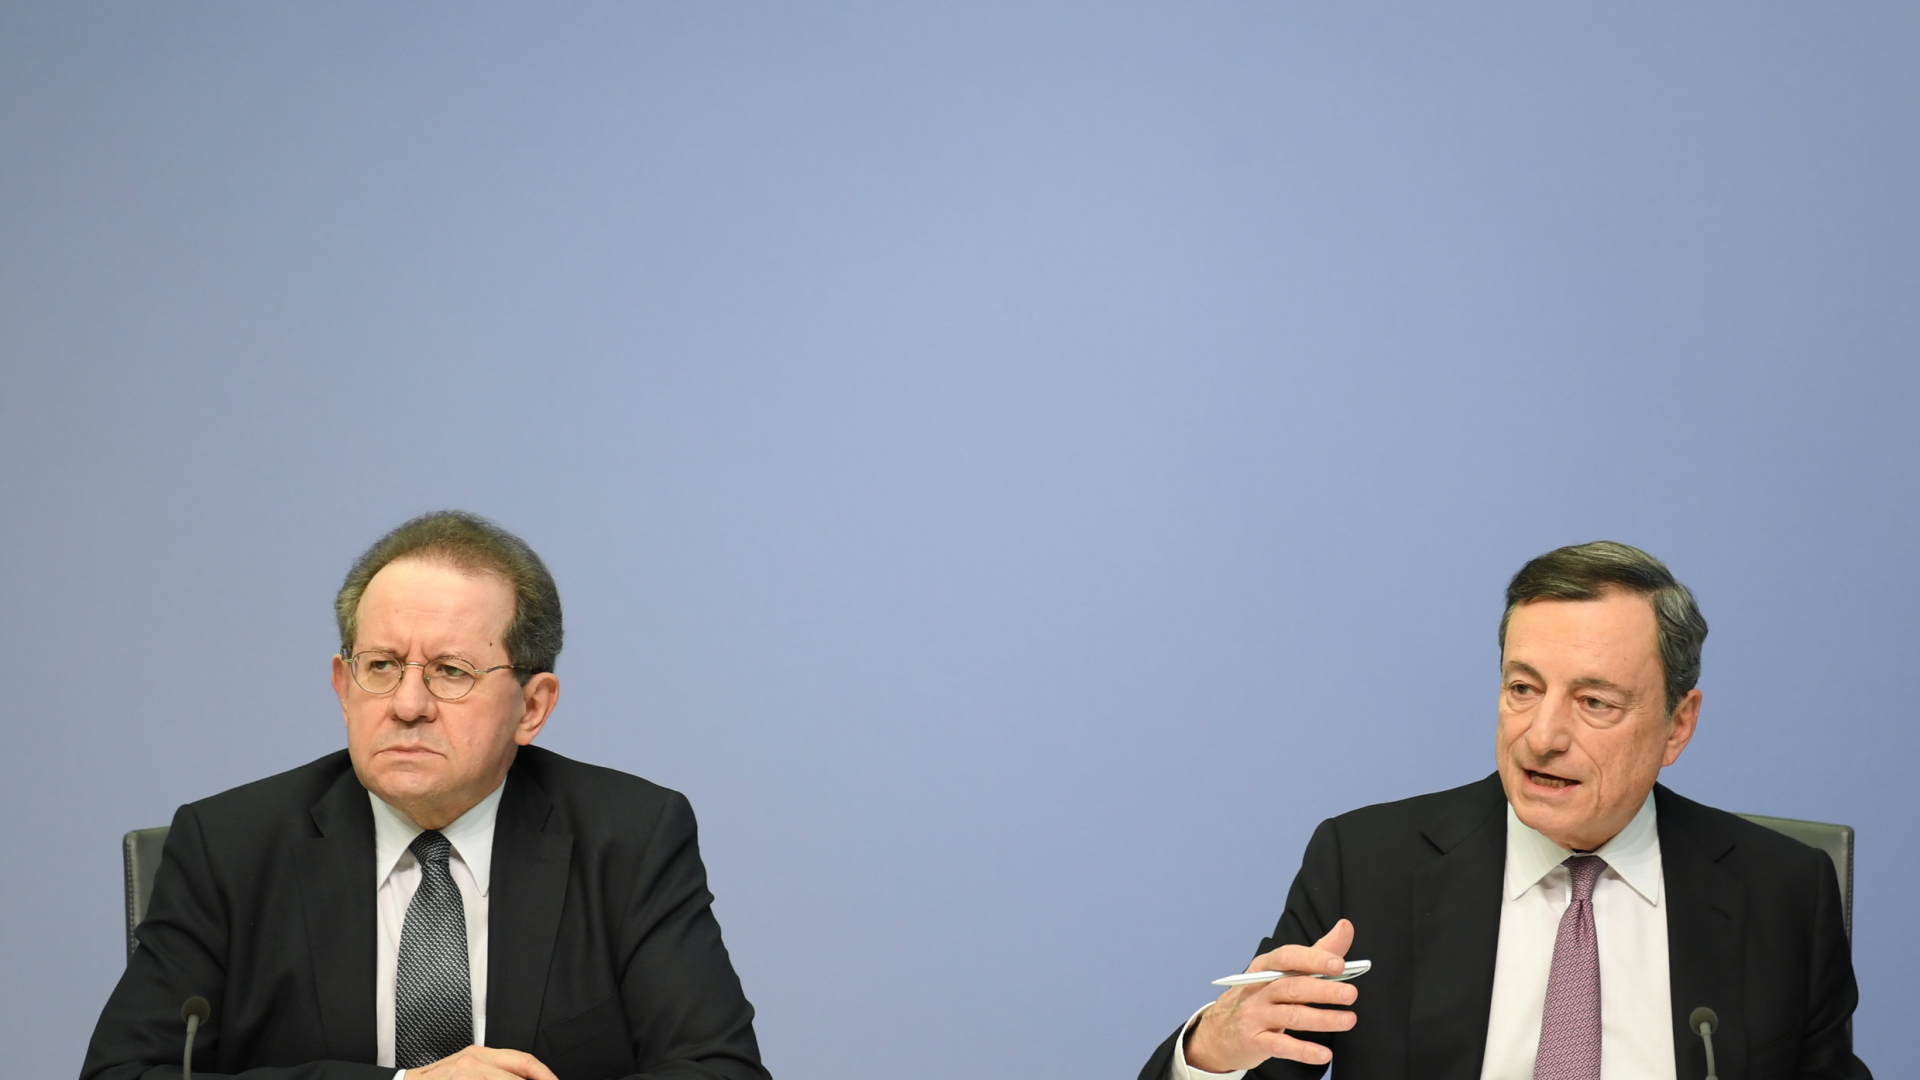 Vítor Constâncio (links) sitz auf einer Pressekonferenz neben EZB-Chef Mario Draghi. | dpa